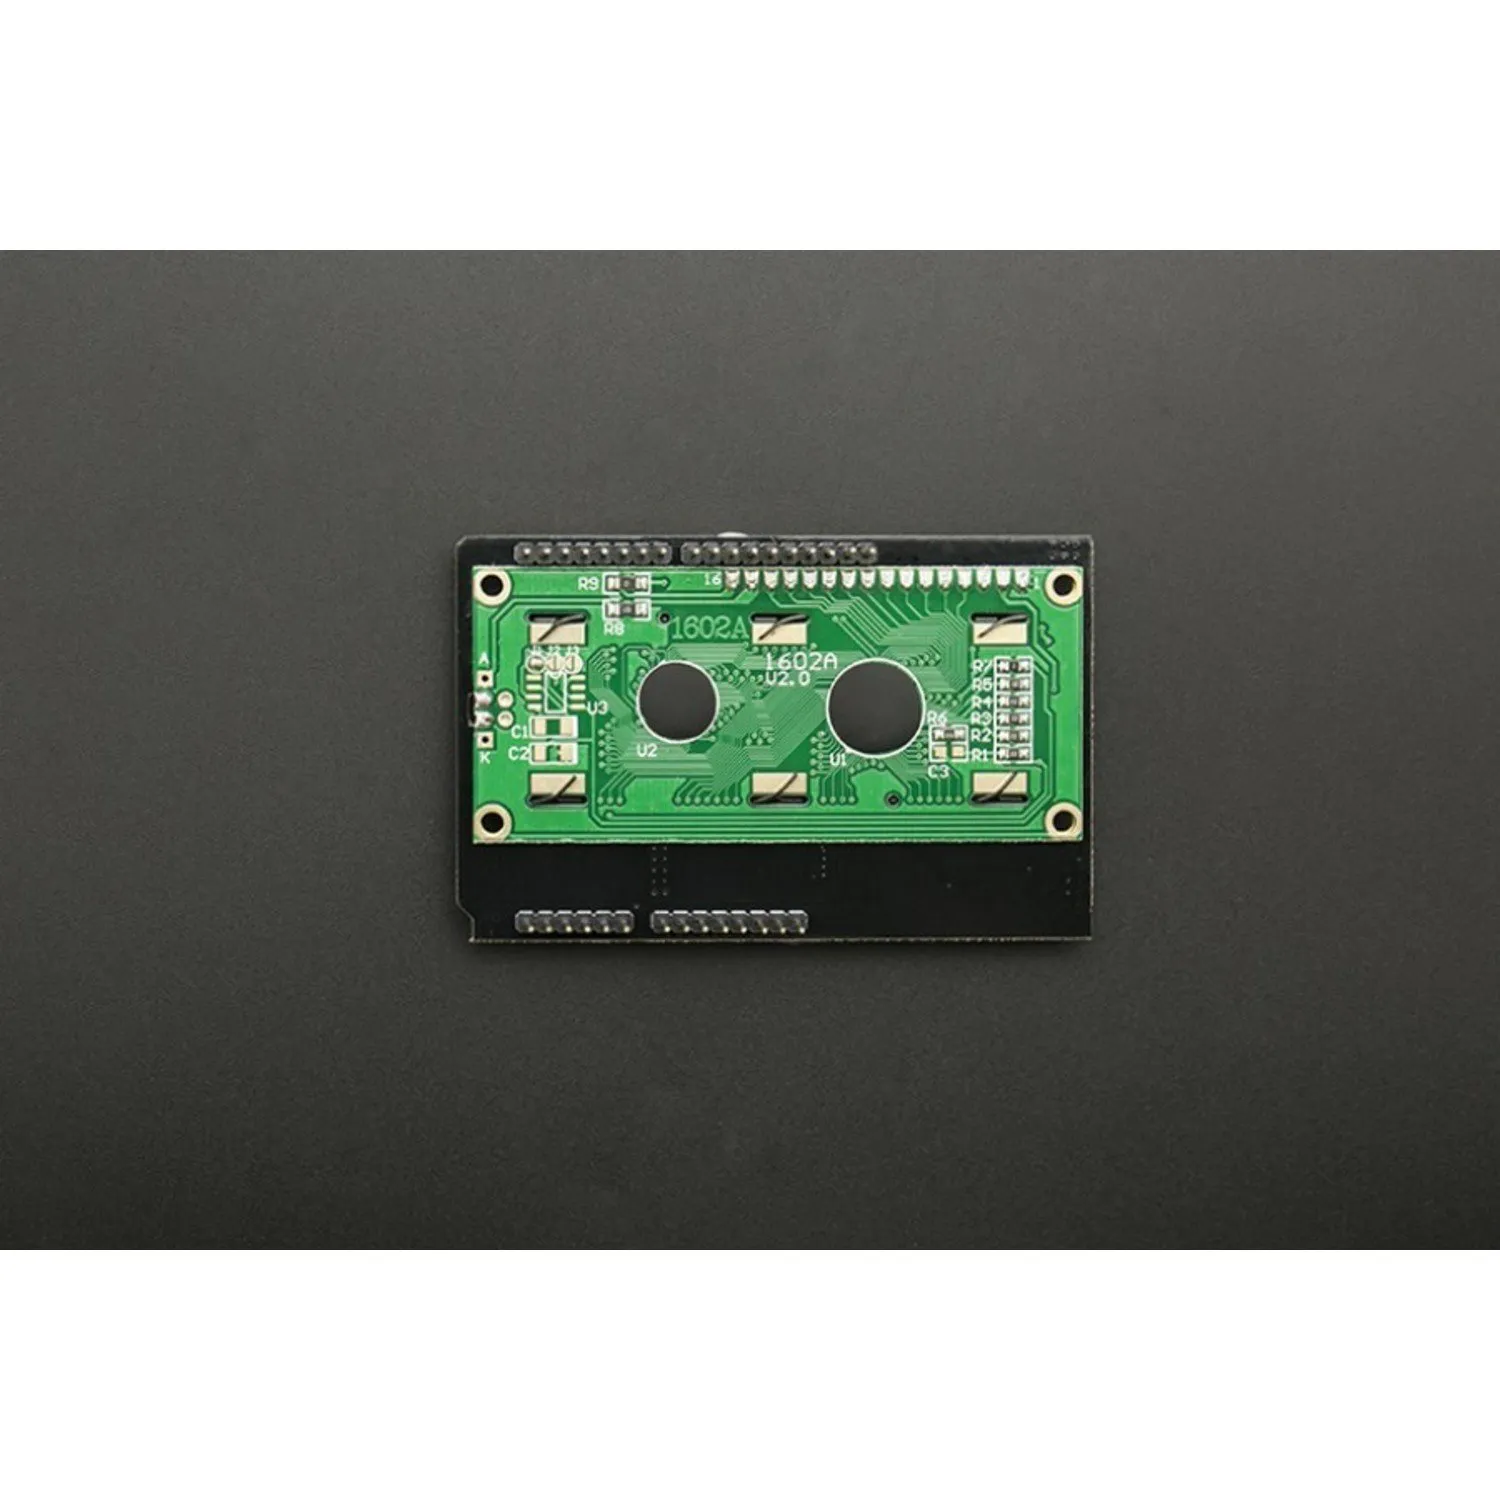 Photo of LCD Keypad Shield V2.0 For Arduino